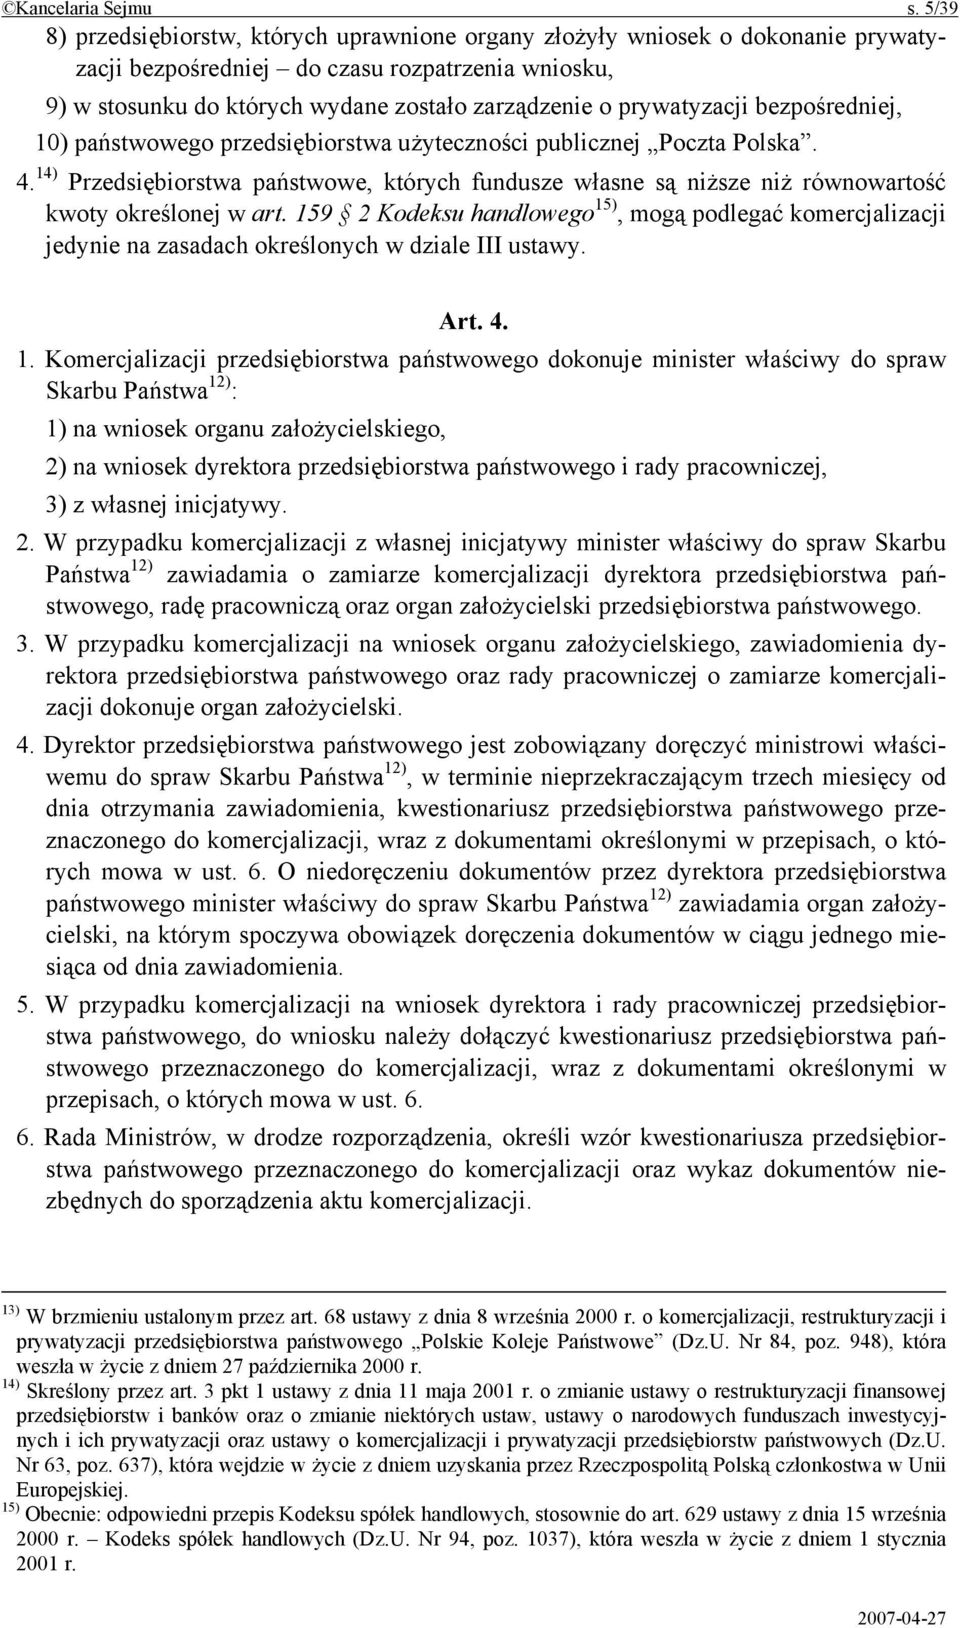 prywatyzacji bezpośredniej, 10) państwowego przedsiębiorstwa użyteczności publicznej Poczta Polska. 4.